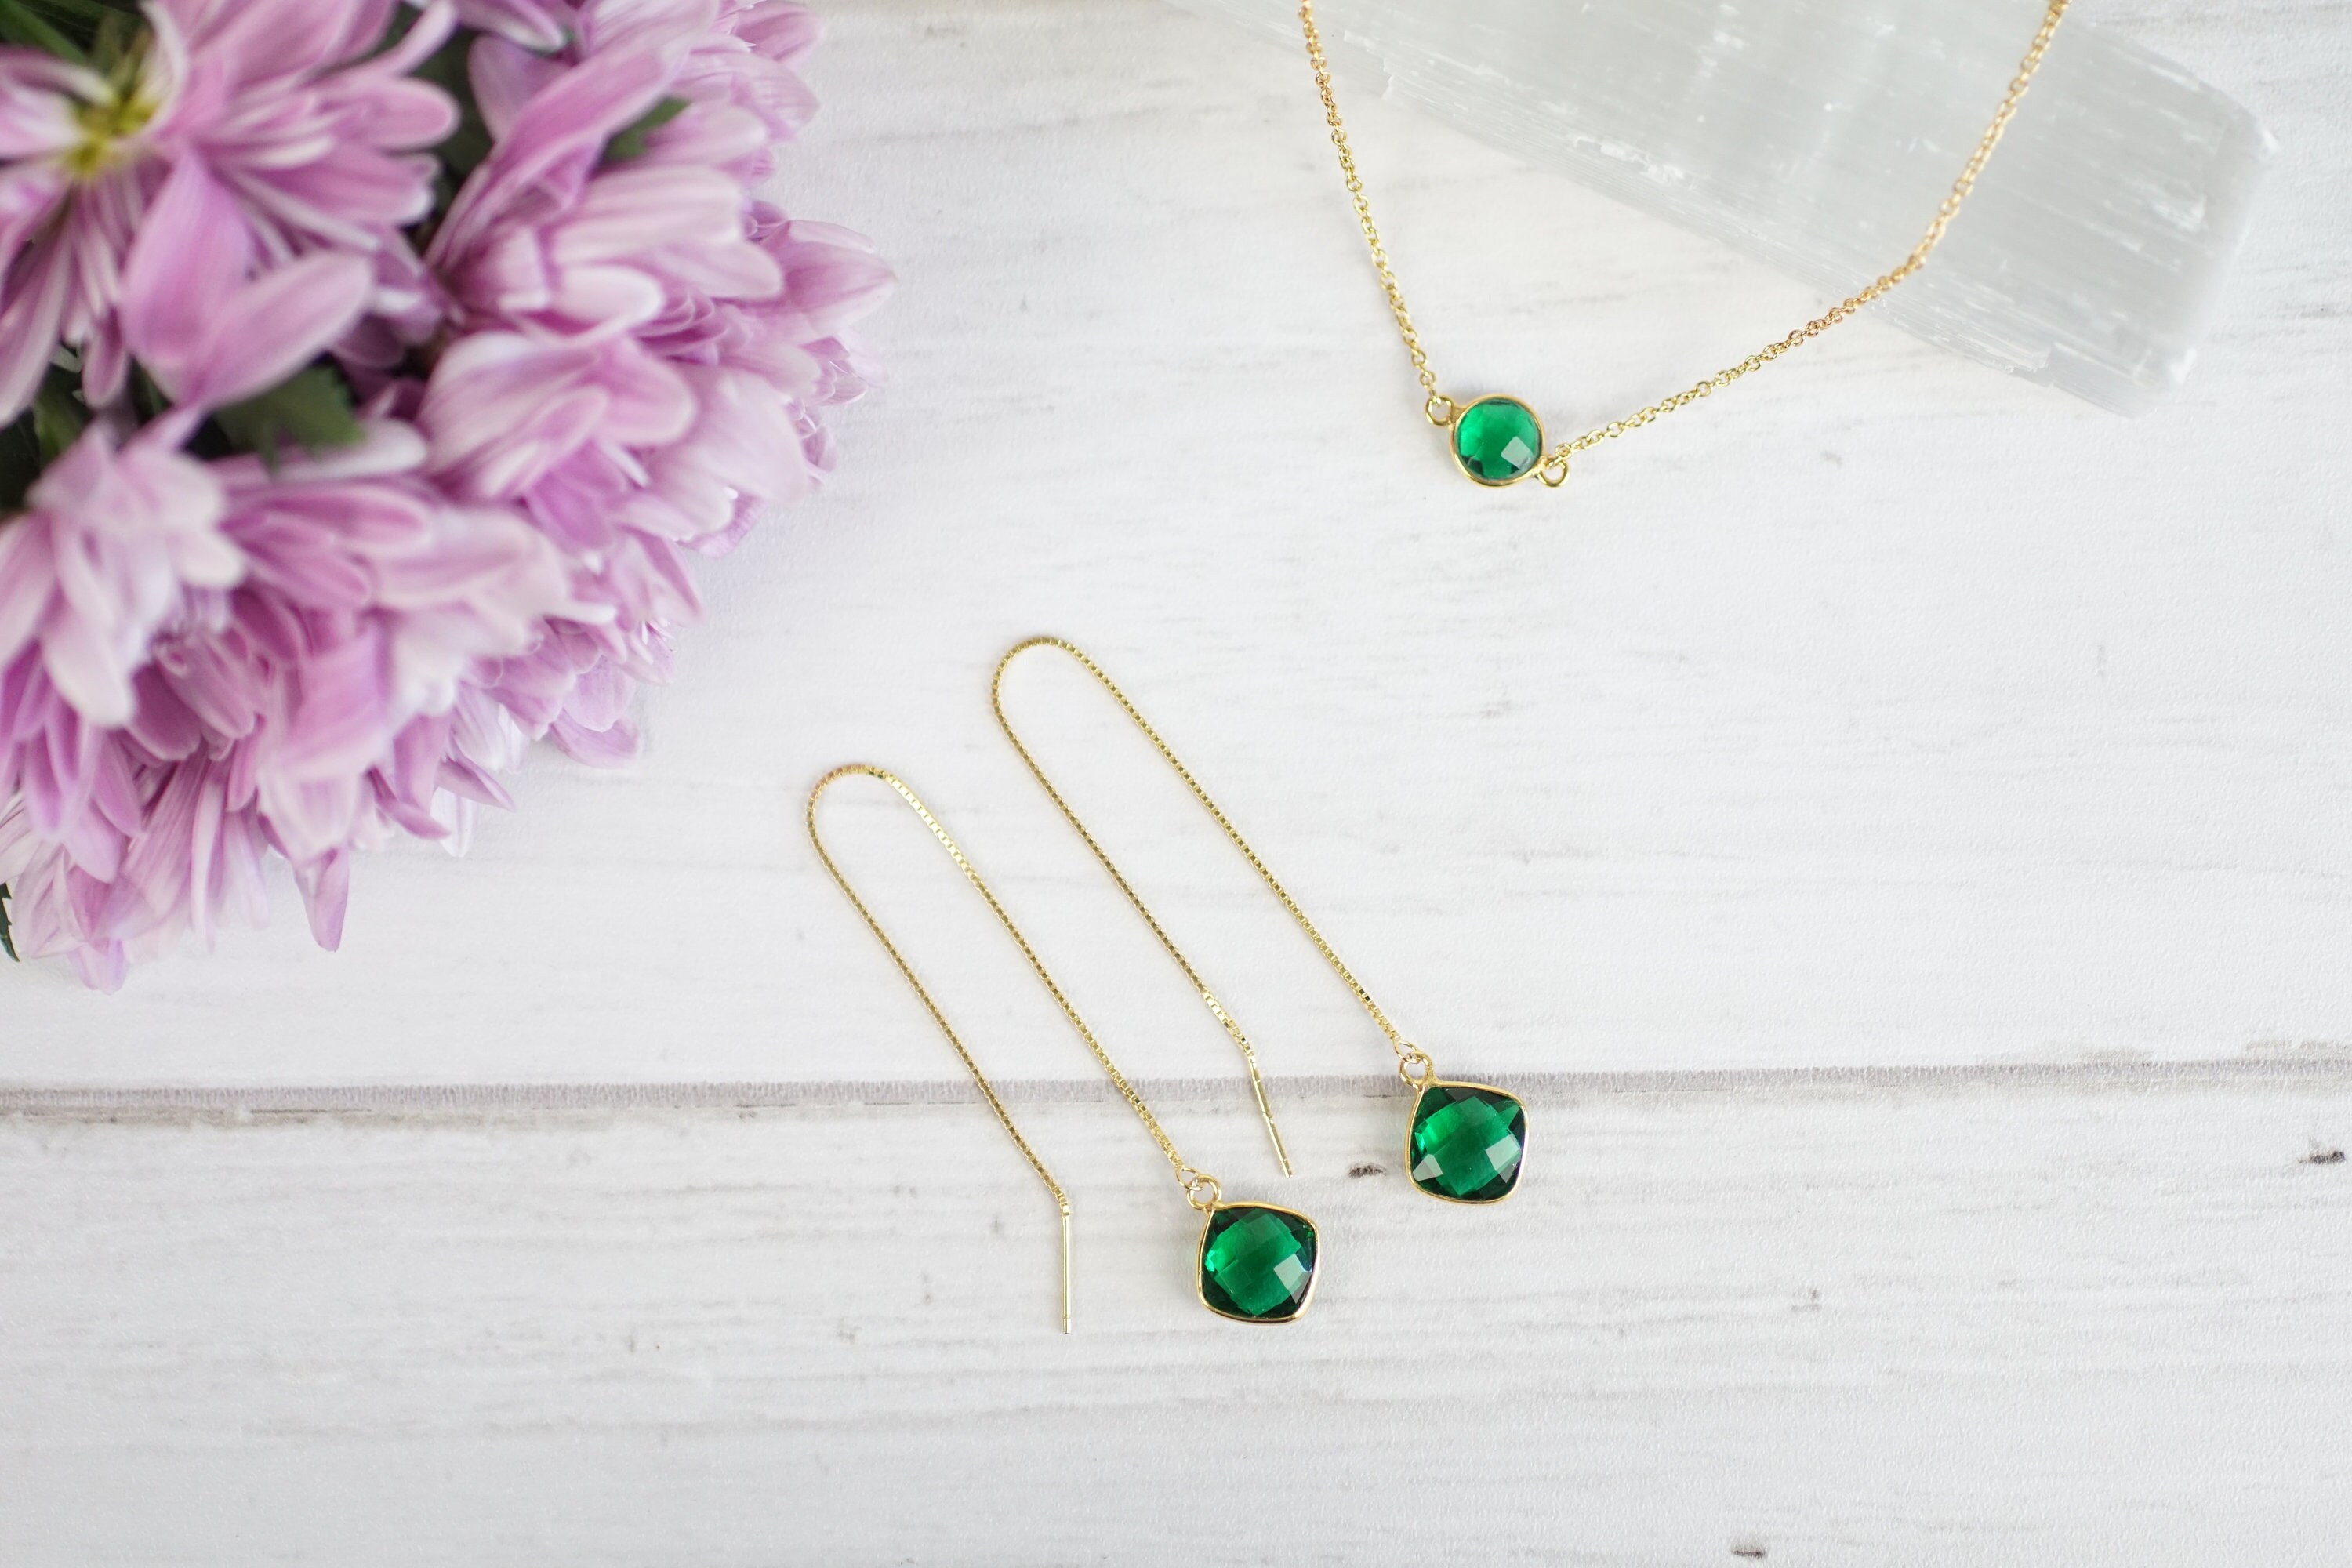 Emerald Earrings Green Threader Earrings Long Chain Earrings | Etsy